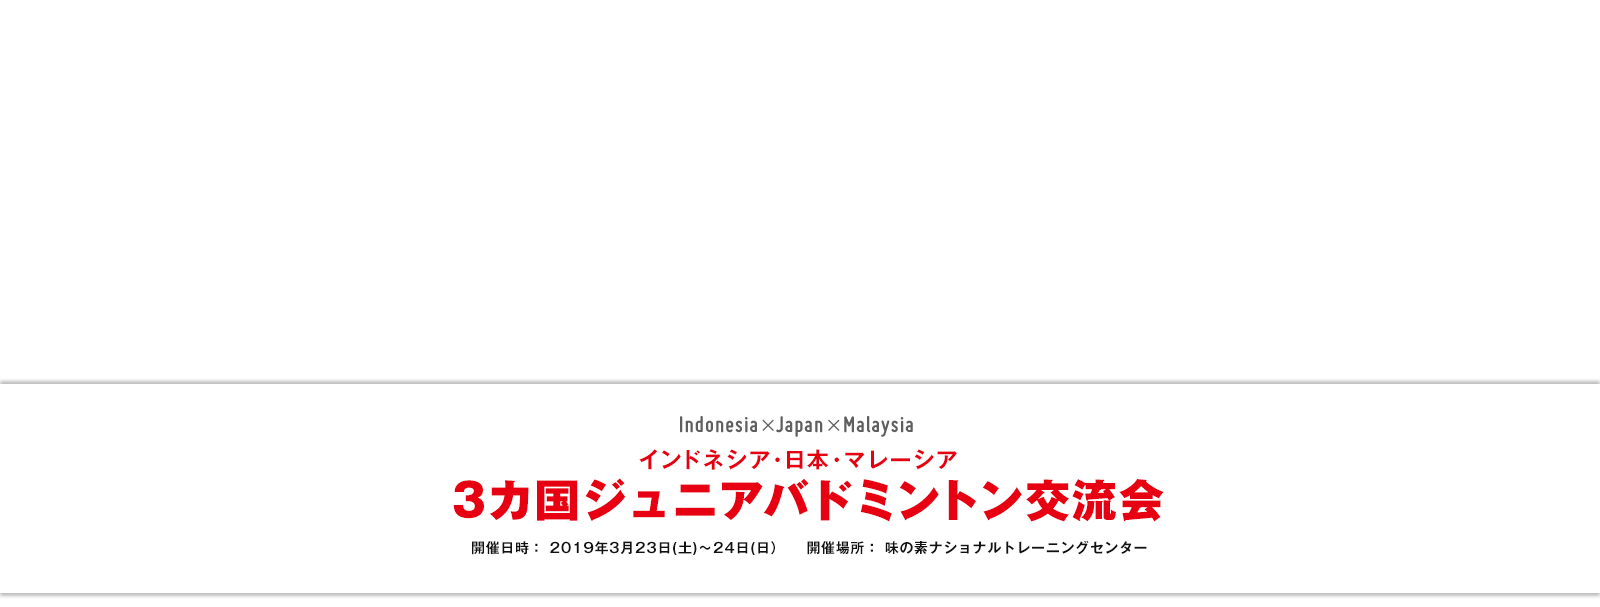 インドネシア・日本・マレーシア 3カ国ジュニアバドミントン交流会 開催日時： 2019年3月23日(土)～24日(日) 開催場所：味の素ナショナルトレーニングセンター